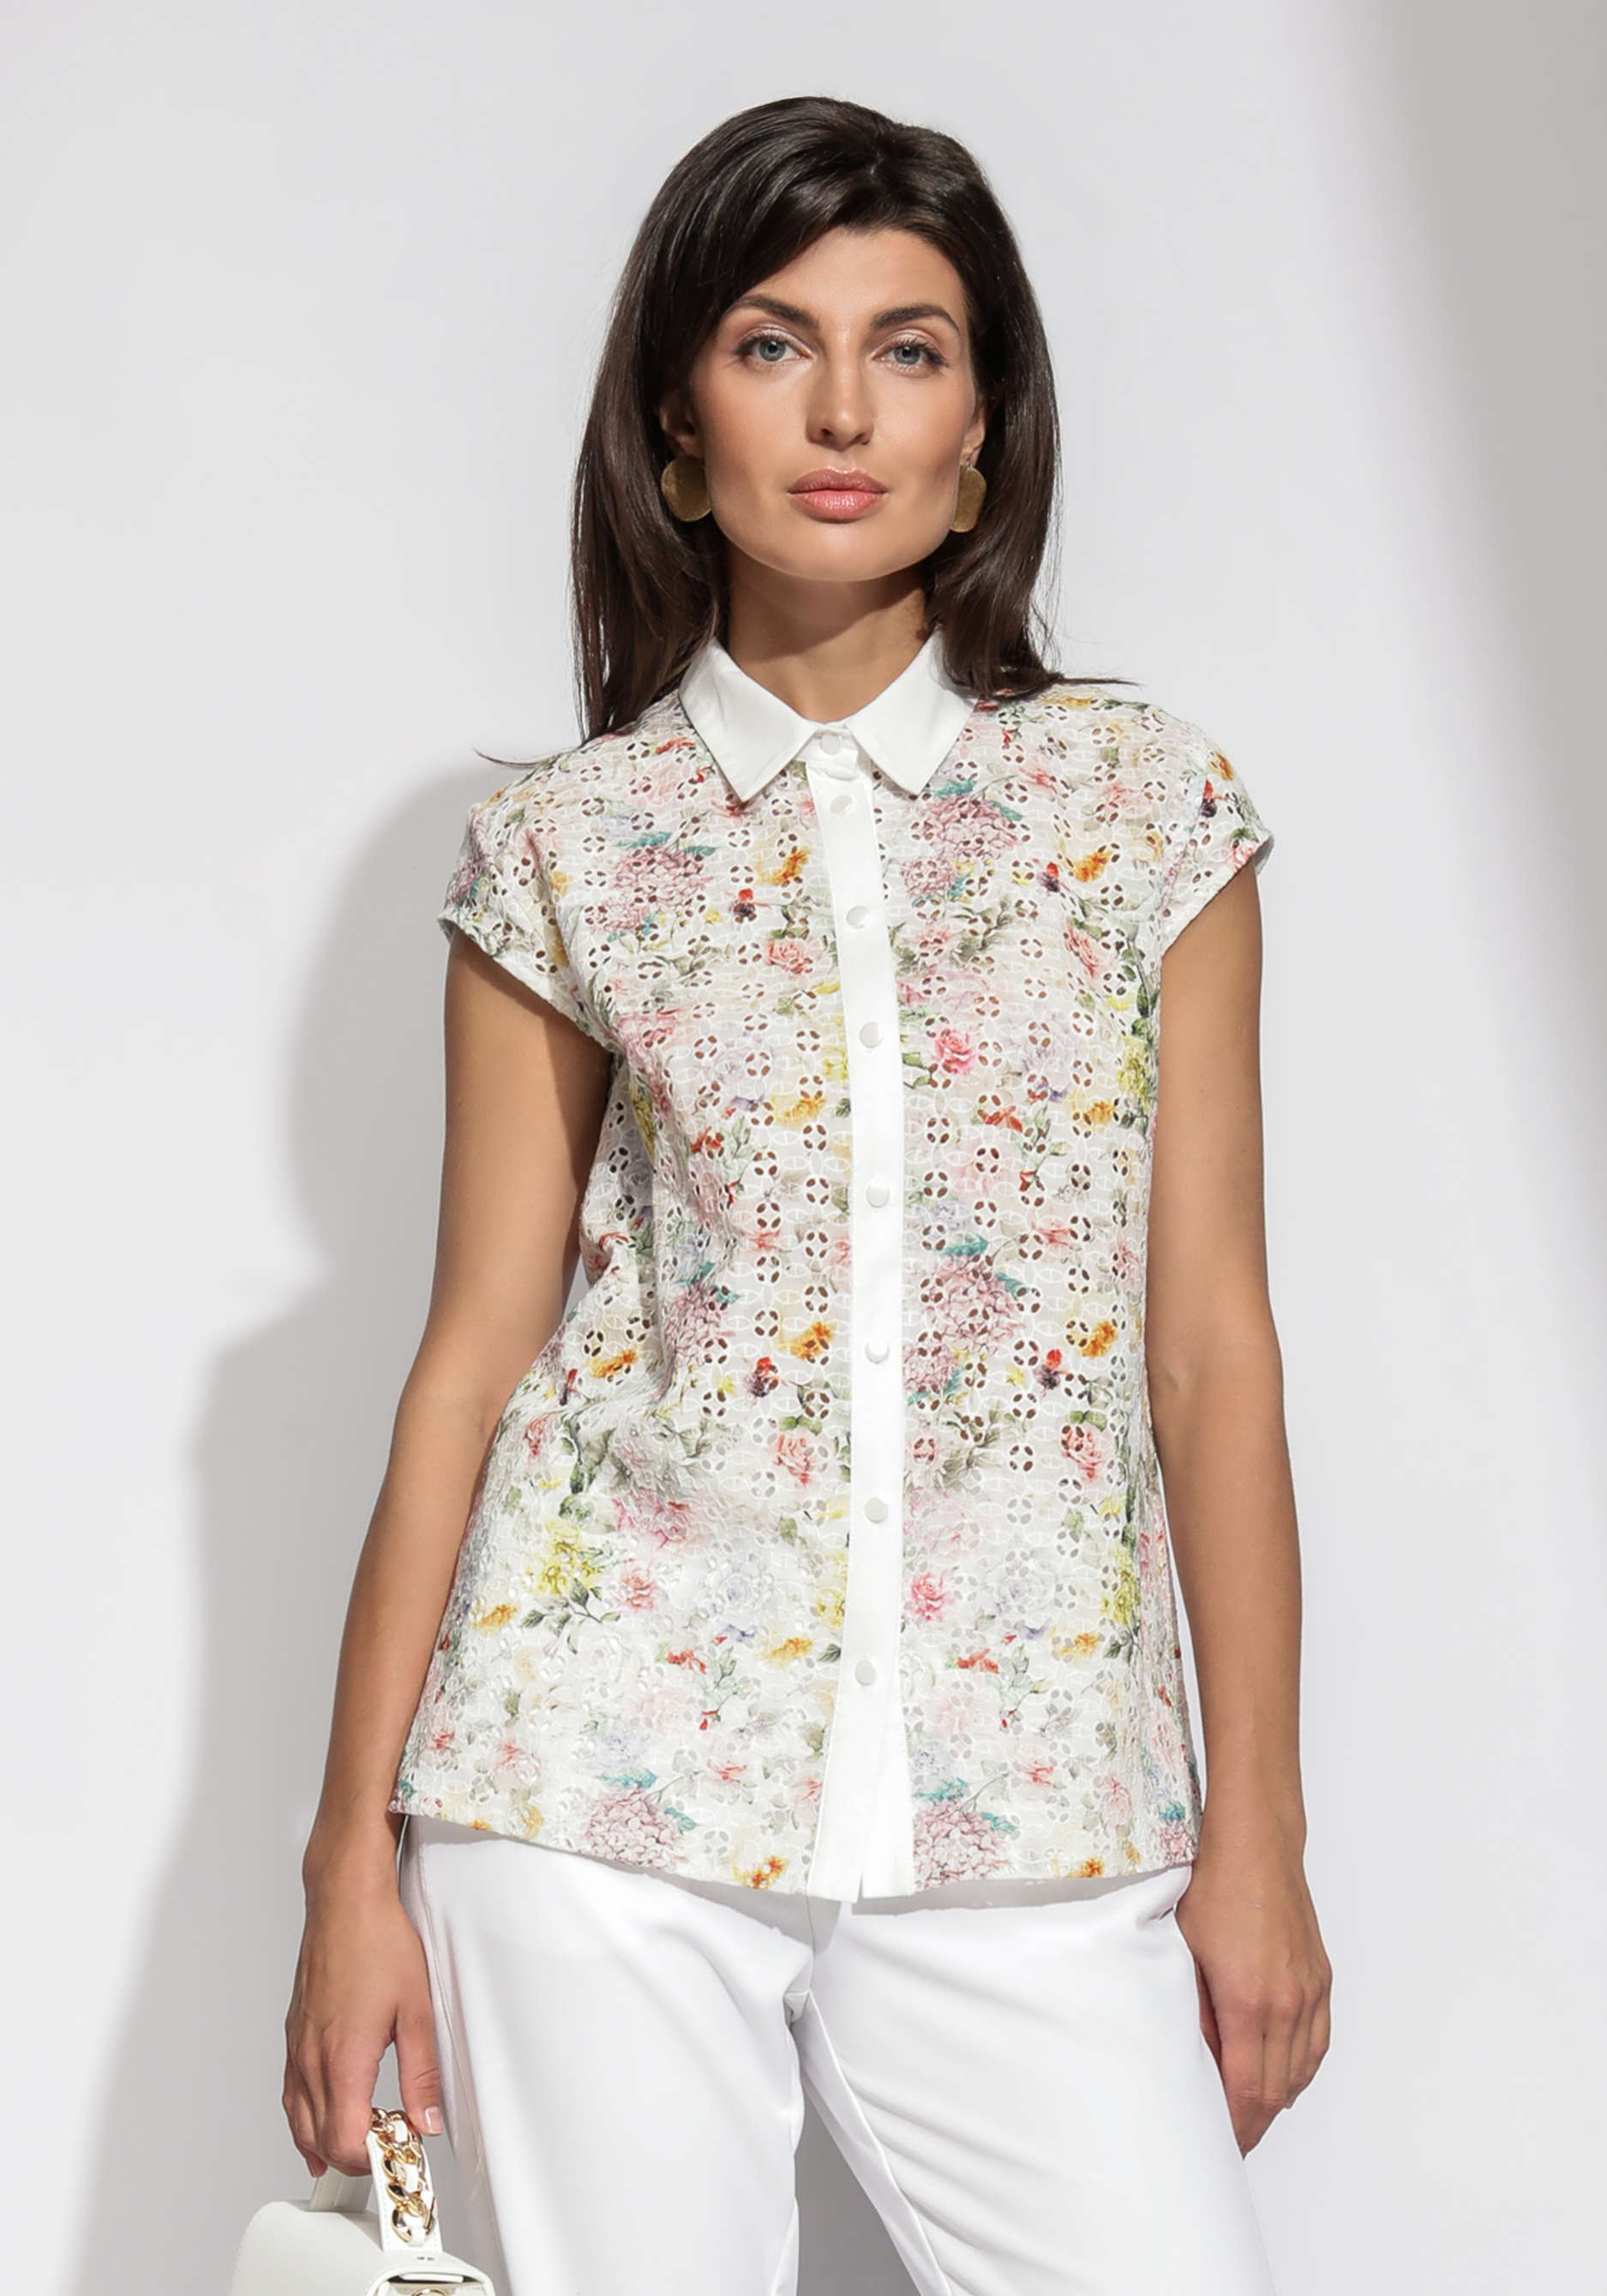 Блузка из шитья с цветочным принтом блузка сьюзи